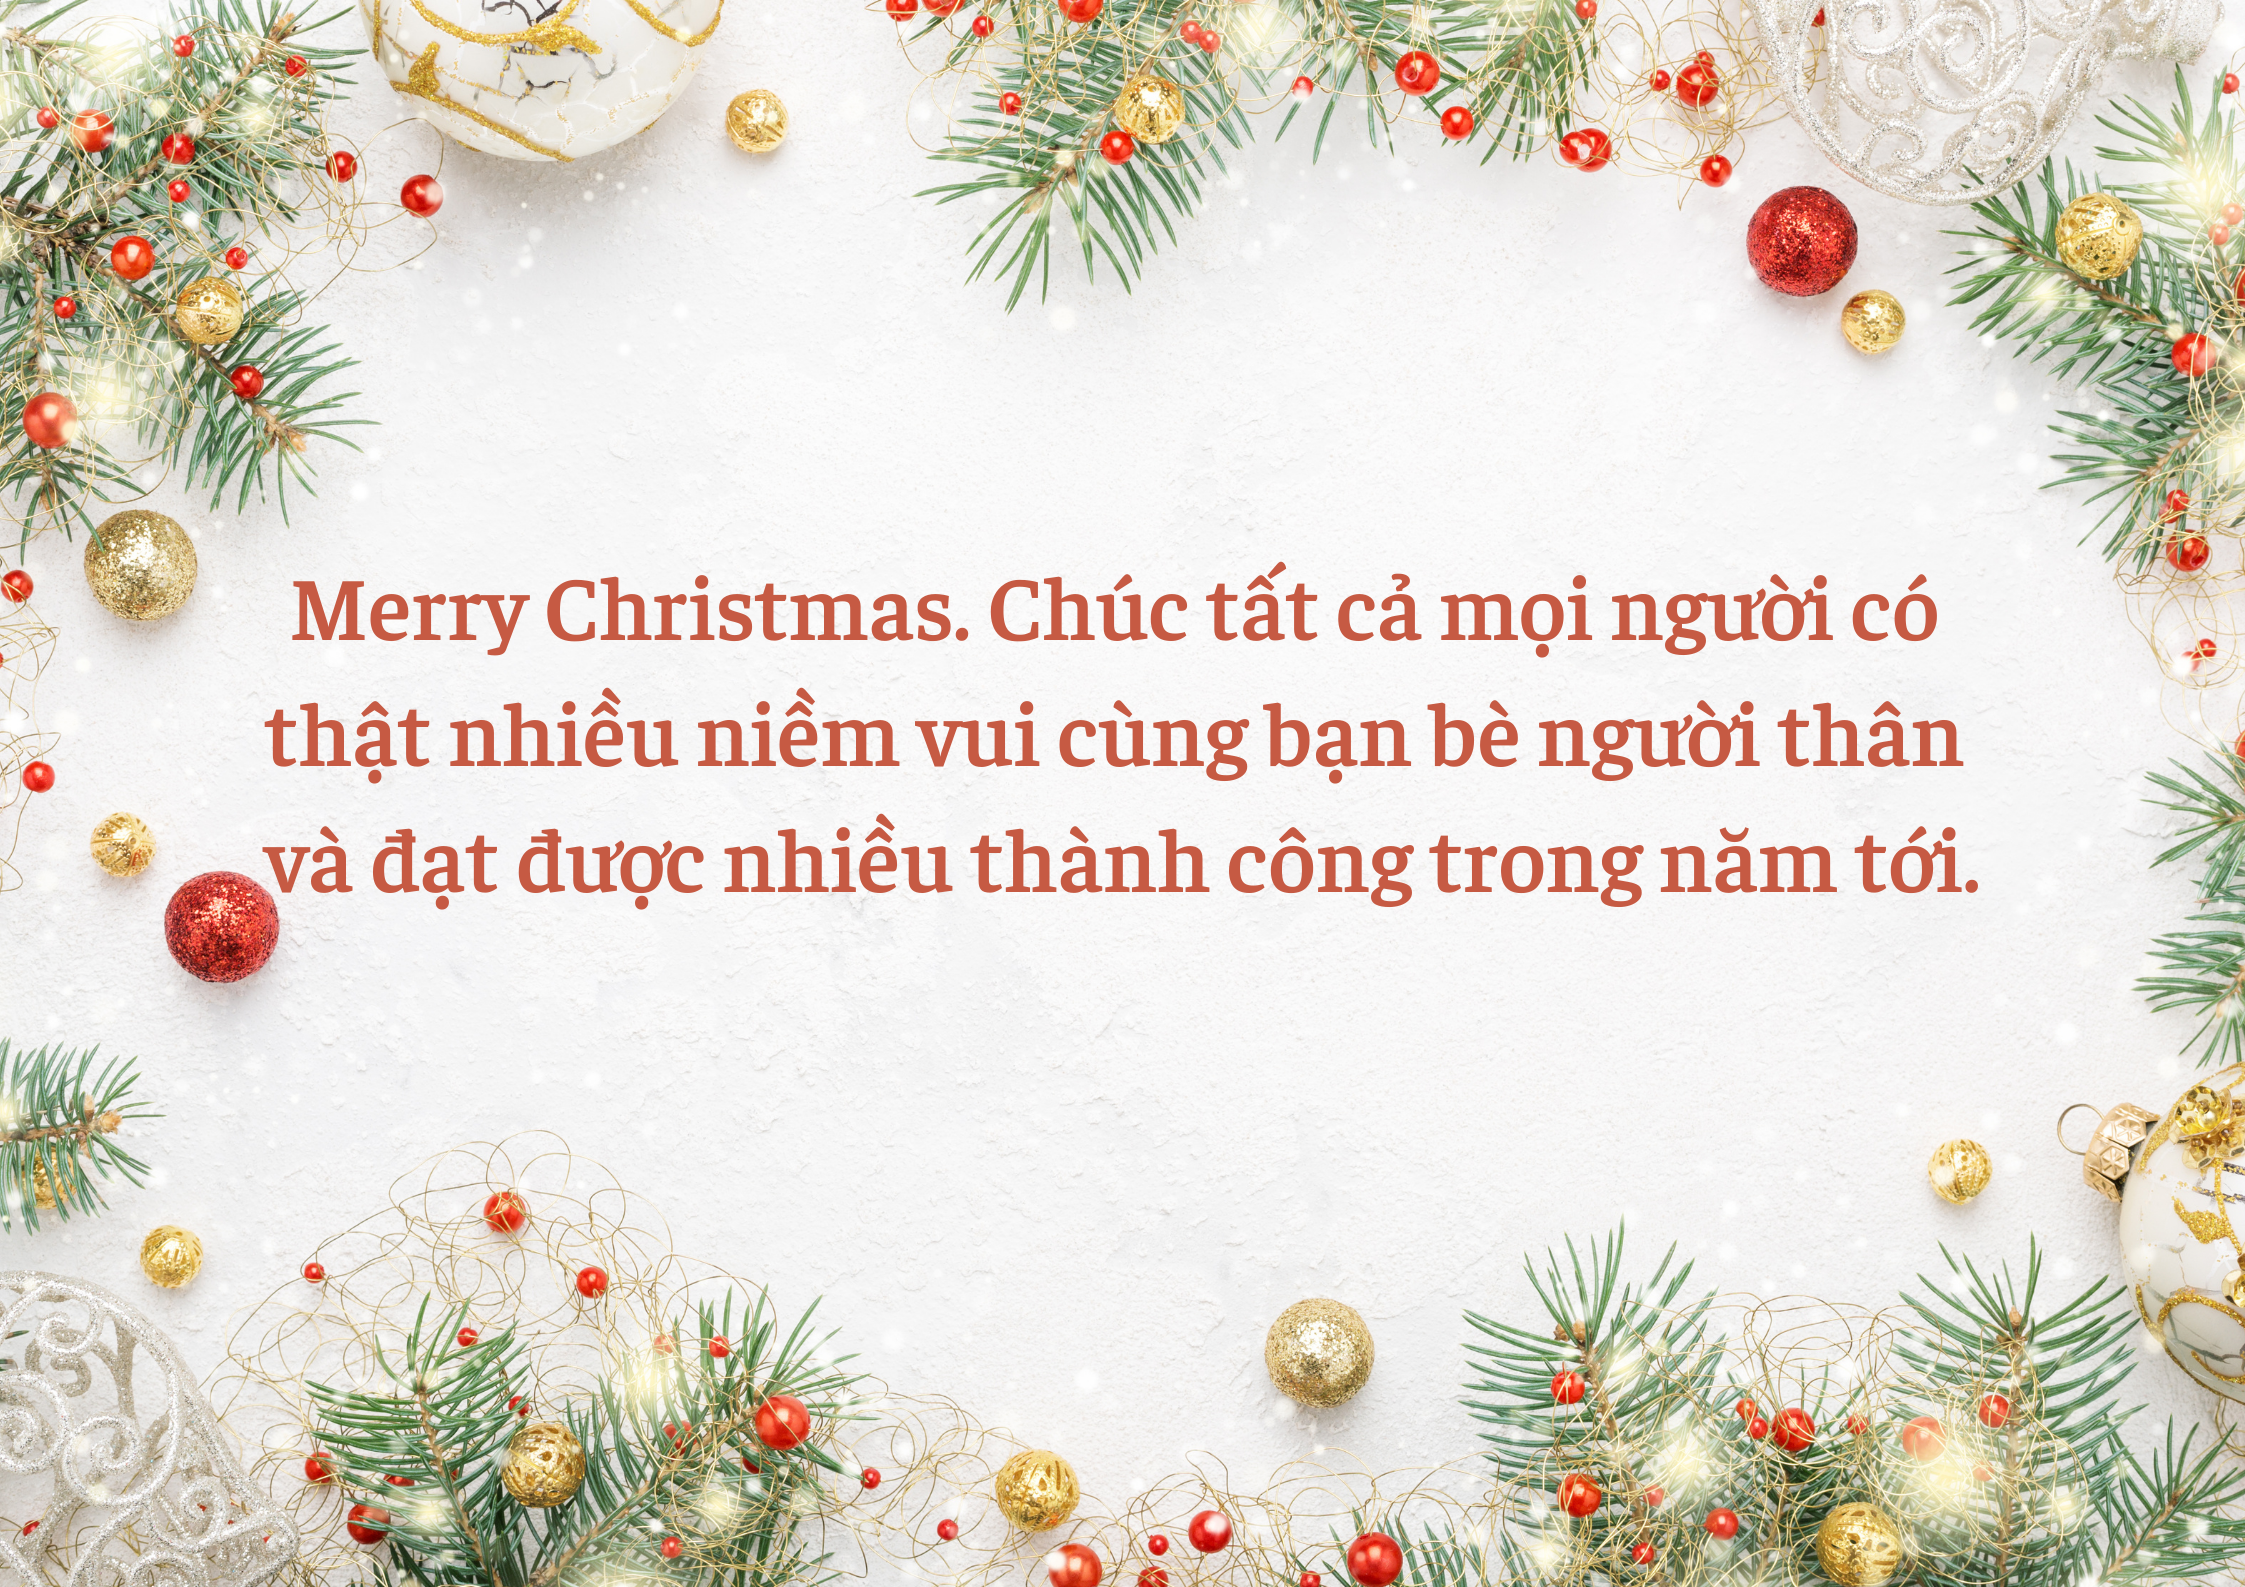 Chúc Giáng Sinh ý nghĩa: Hãy cùng đón một mùa Giáng Sinh ý nghĩa với những lời chúc tốt đẹp nhất. Hình ảnh của chúng tôi sẽ mang lại cho bạn niềm vui và sự phấn khích trong ngày lễ quan trọng này. Trong không khí Giáng Sinh, hãy luôn đặt niềm tin và hy vọng vào cuộc sống của bạn.